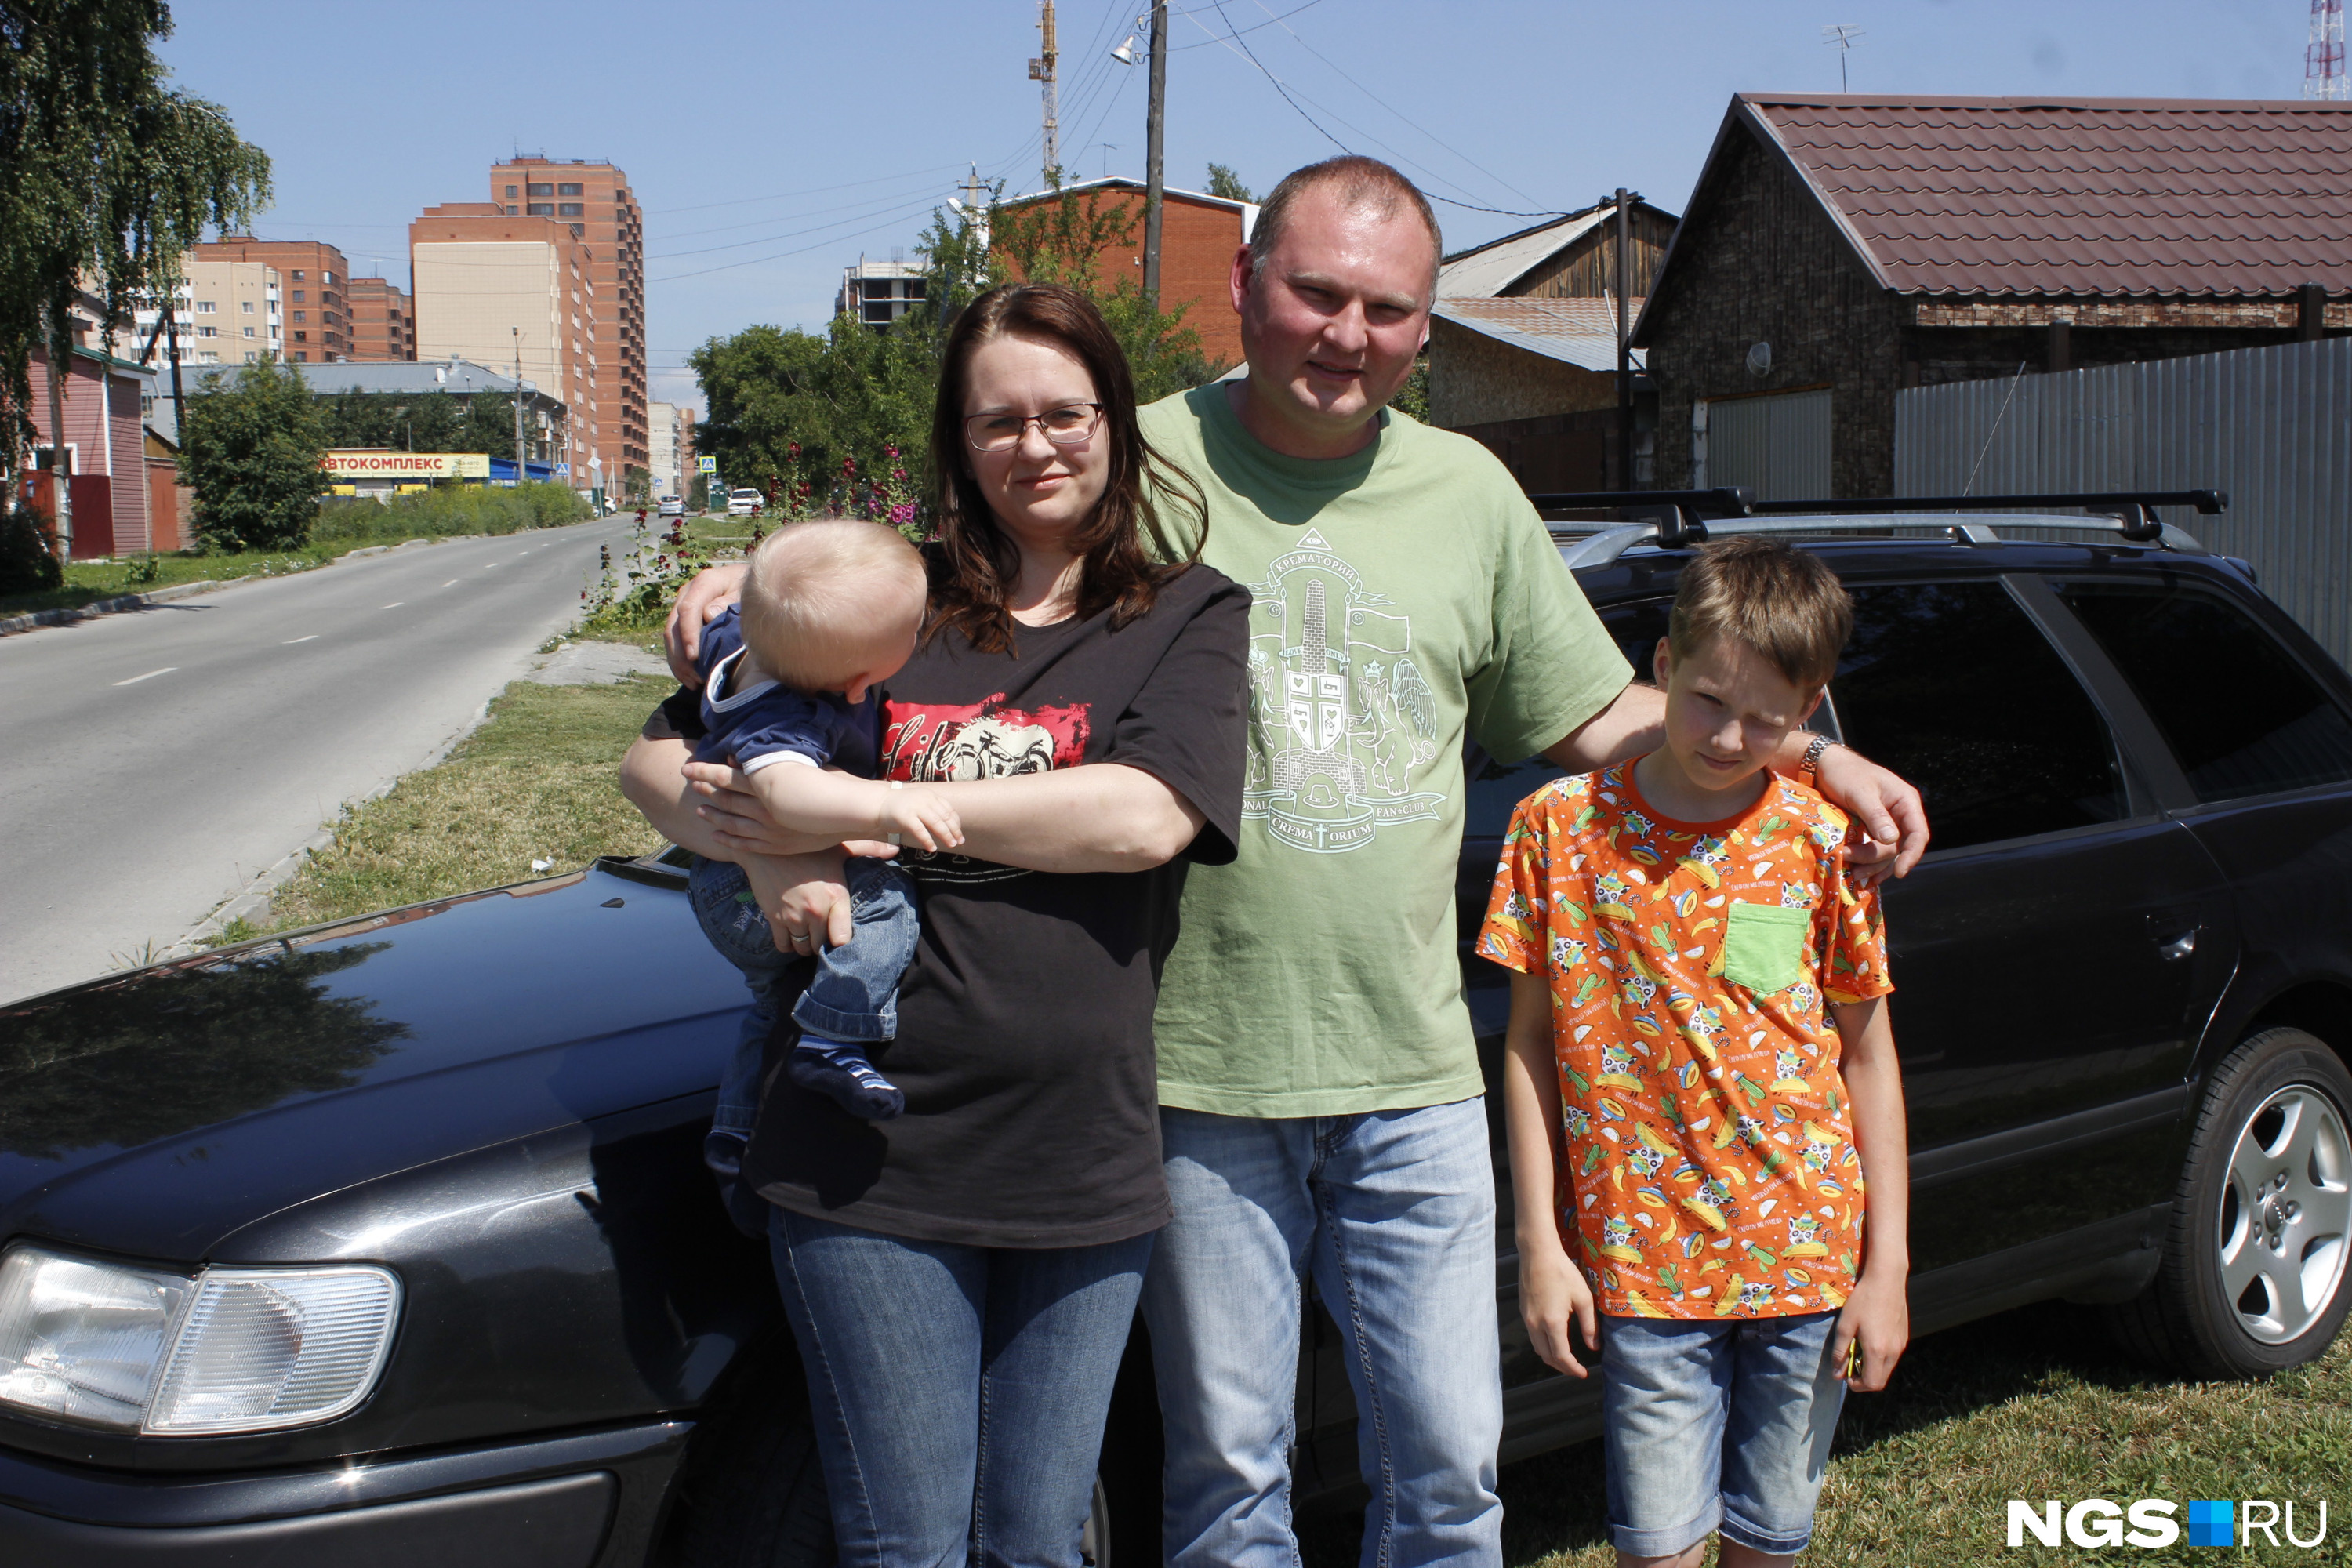 Владимир и Татьяна вместе со своими детьми передвигаются на этой машине каждый день